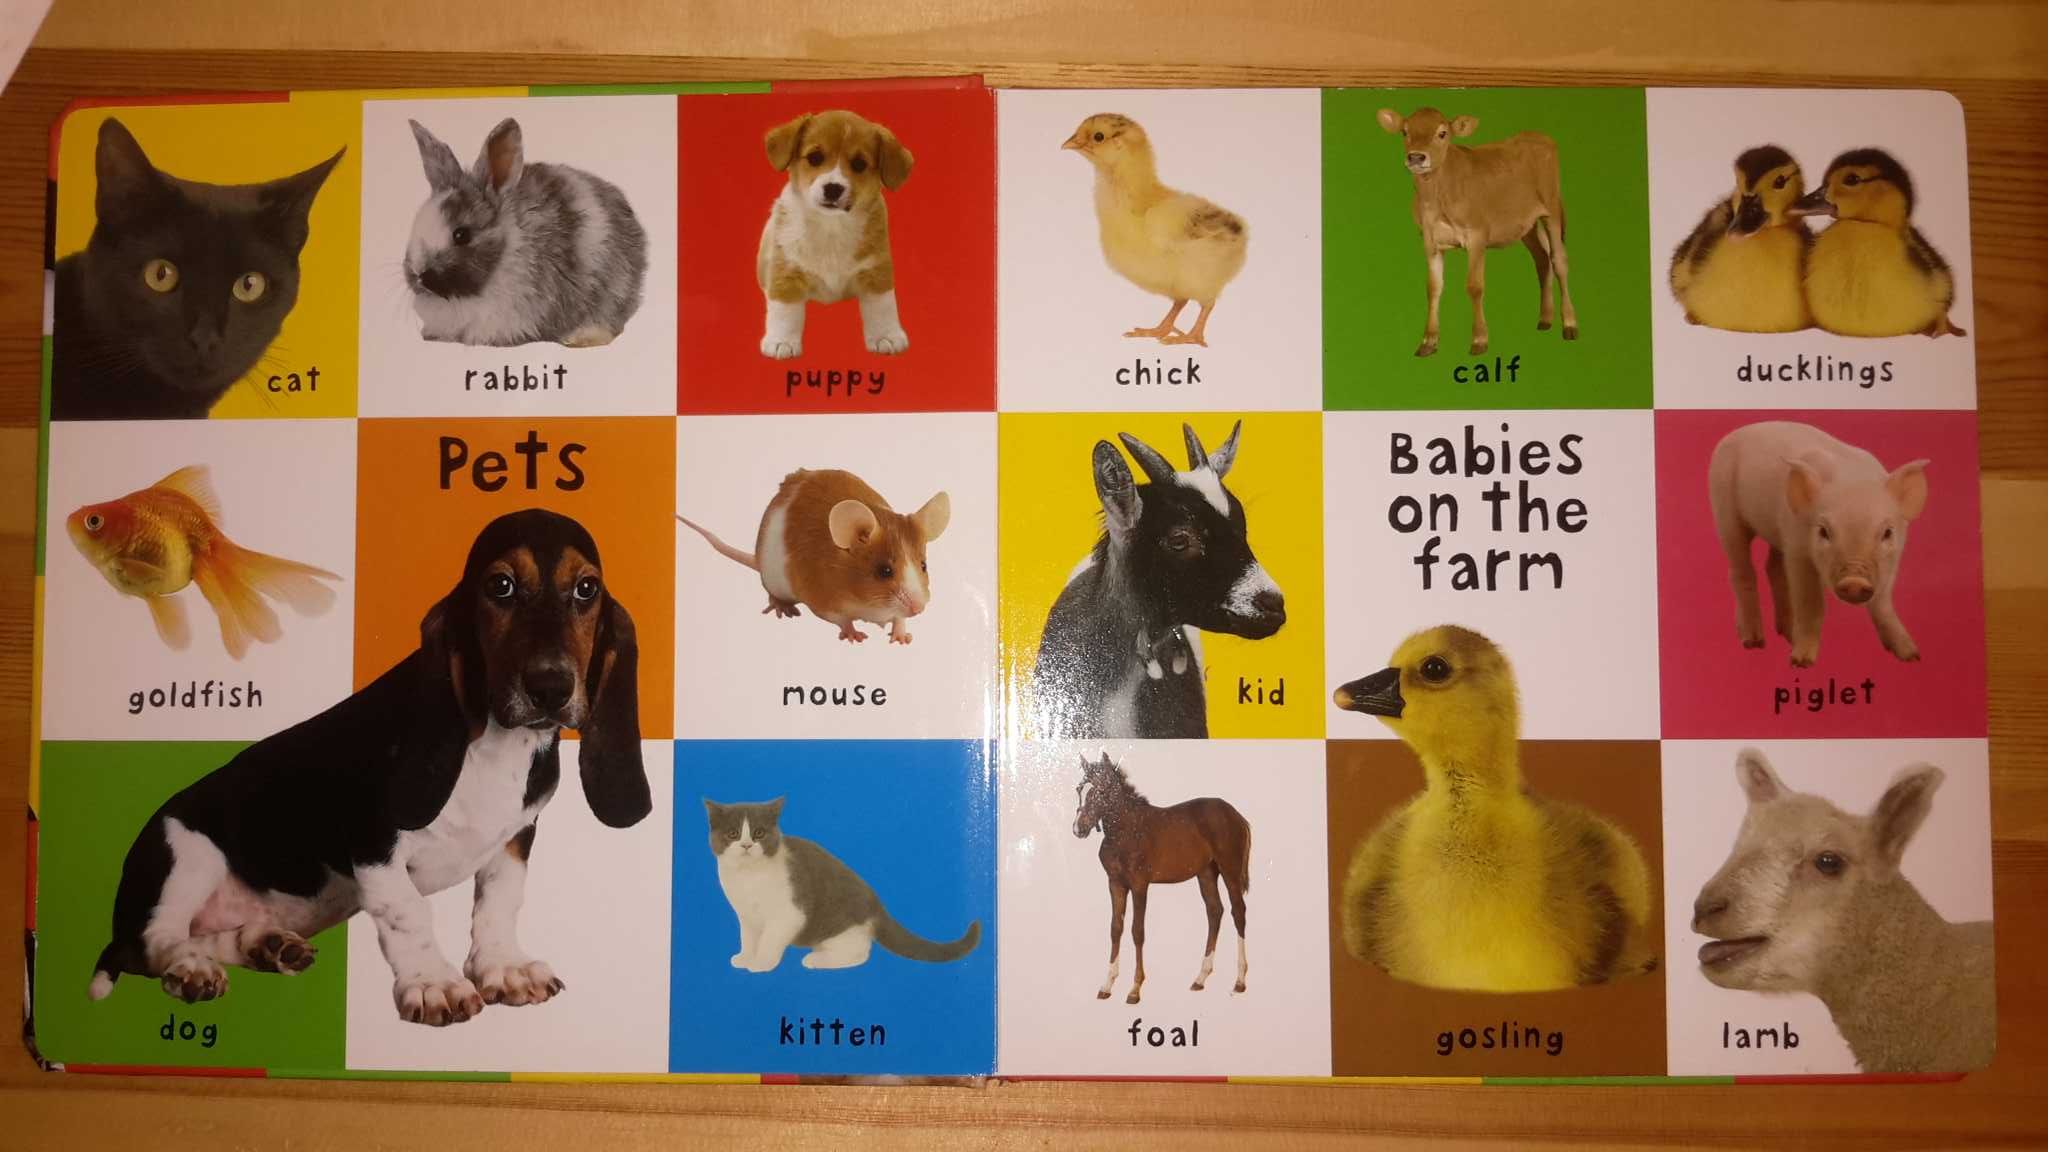 Книга для детей в картинках на английском языке "First 100 animals"